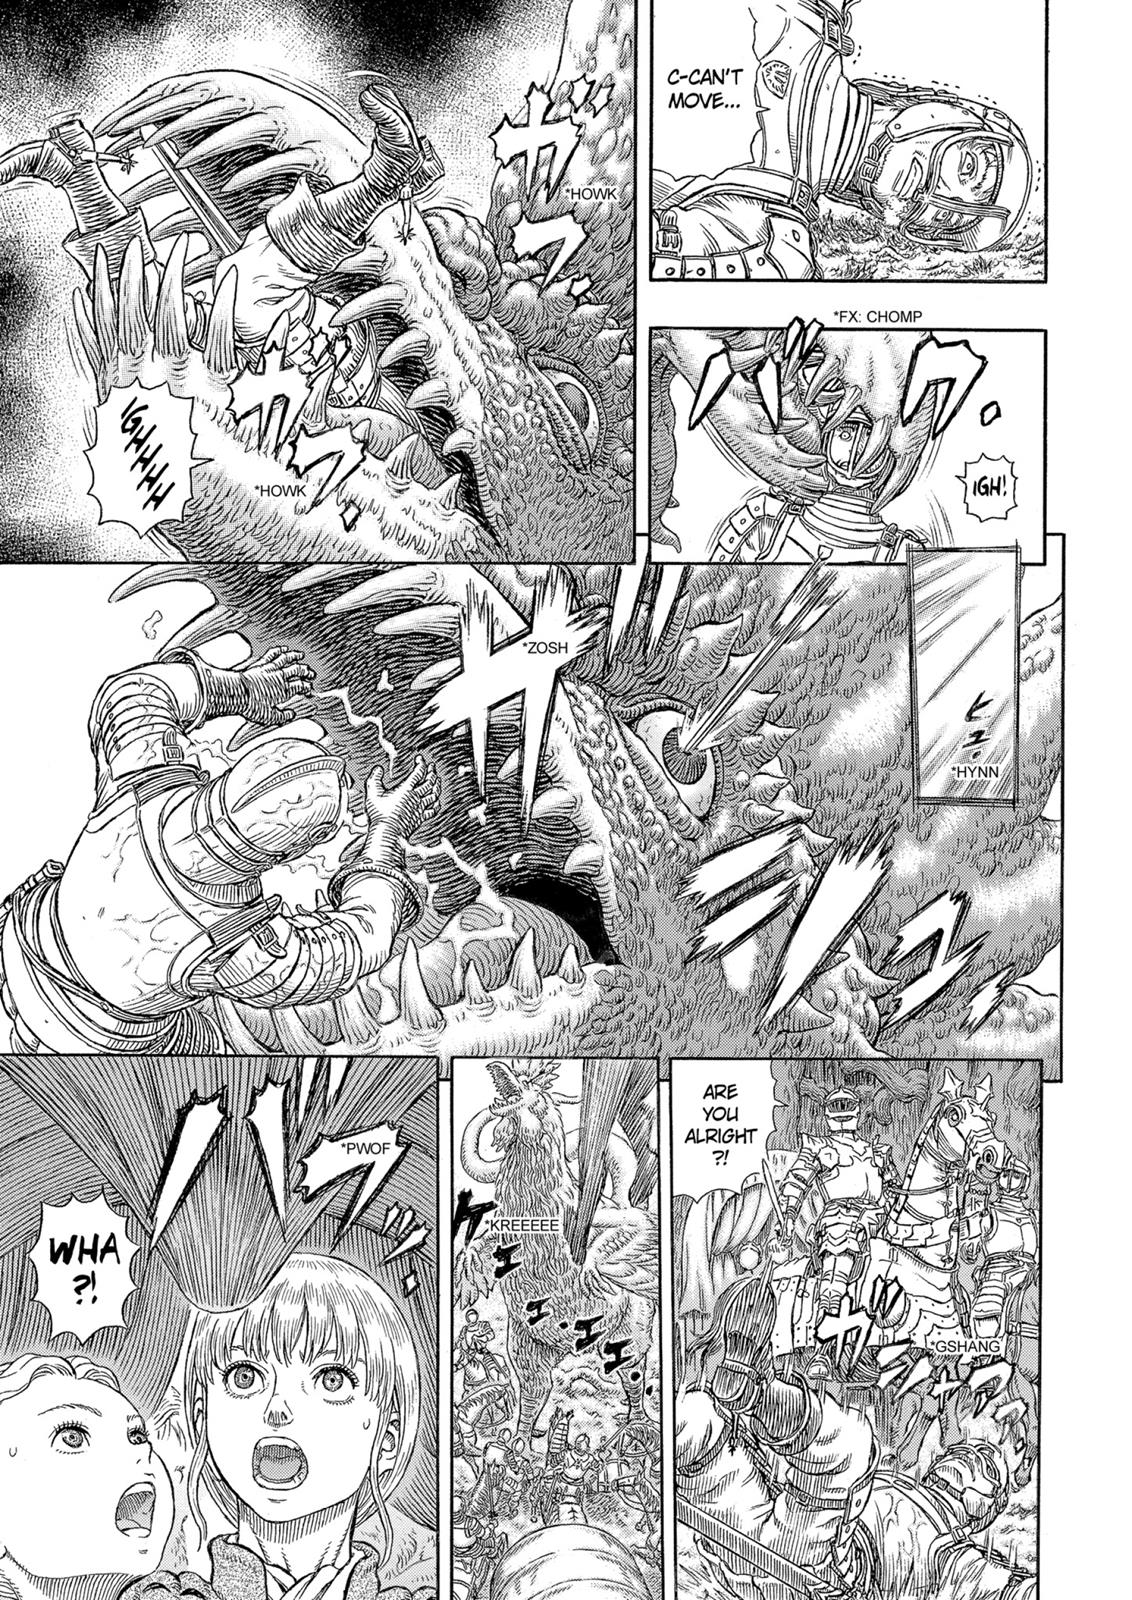 Berserk Manga Chapter 332 image 15